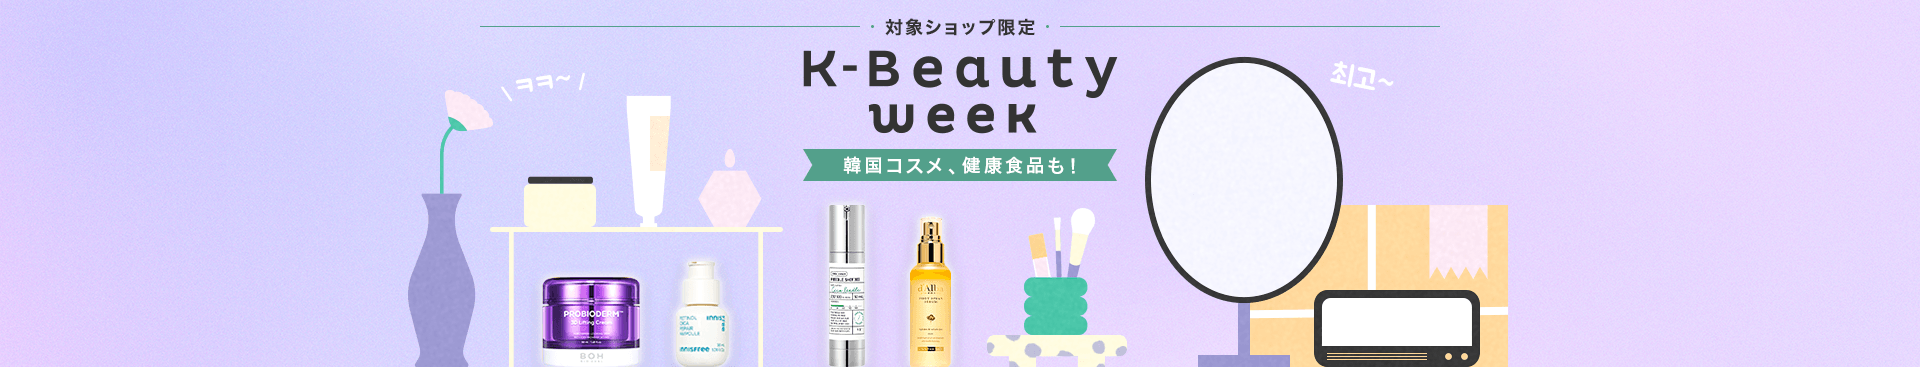 K-Beauty Week